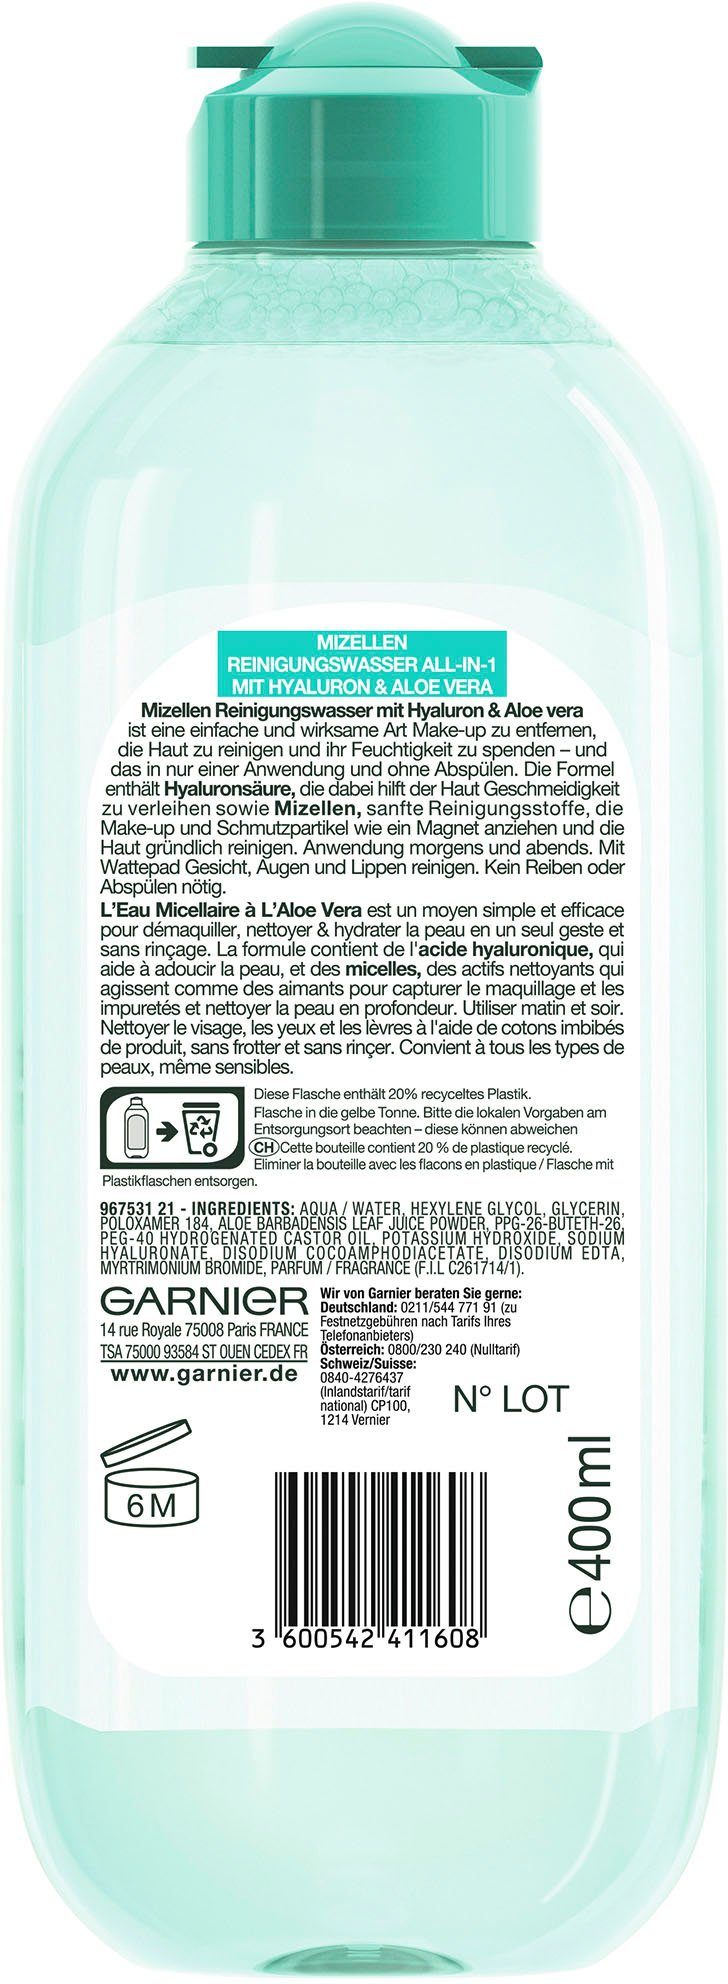 GARNIER All-in-1 Mizellen Gesichtswasser Reinigungswasser